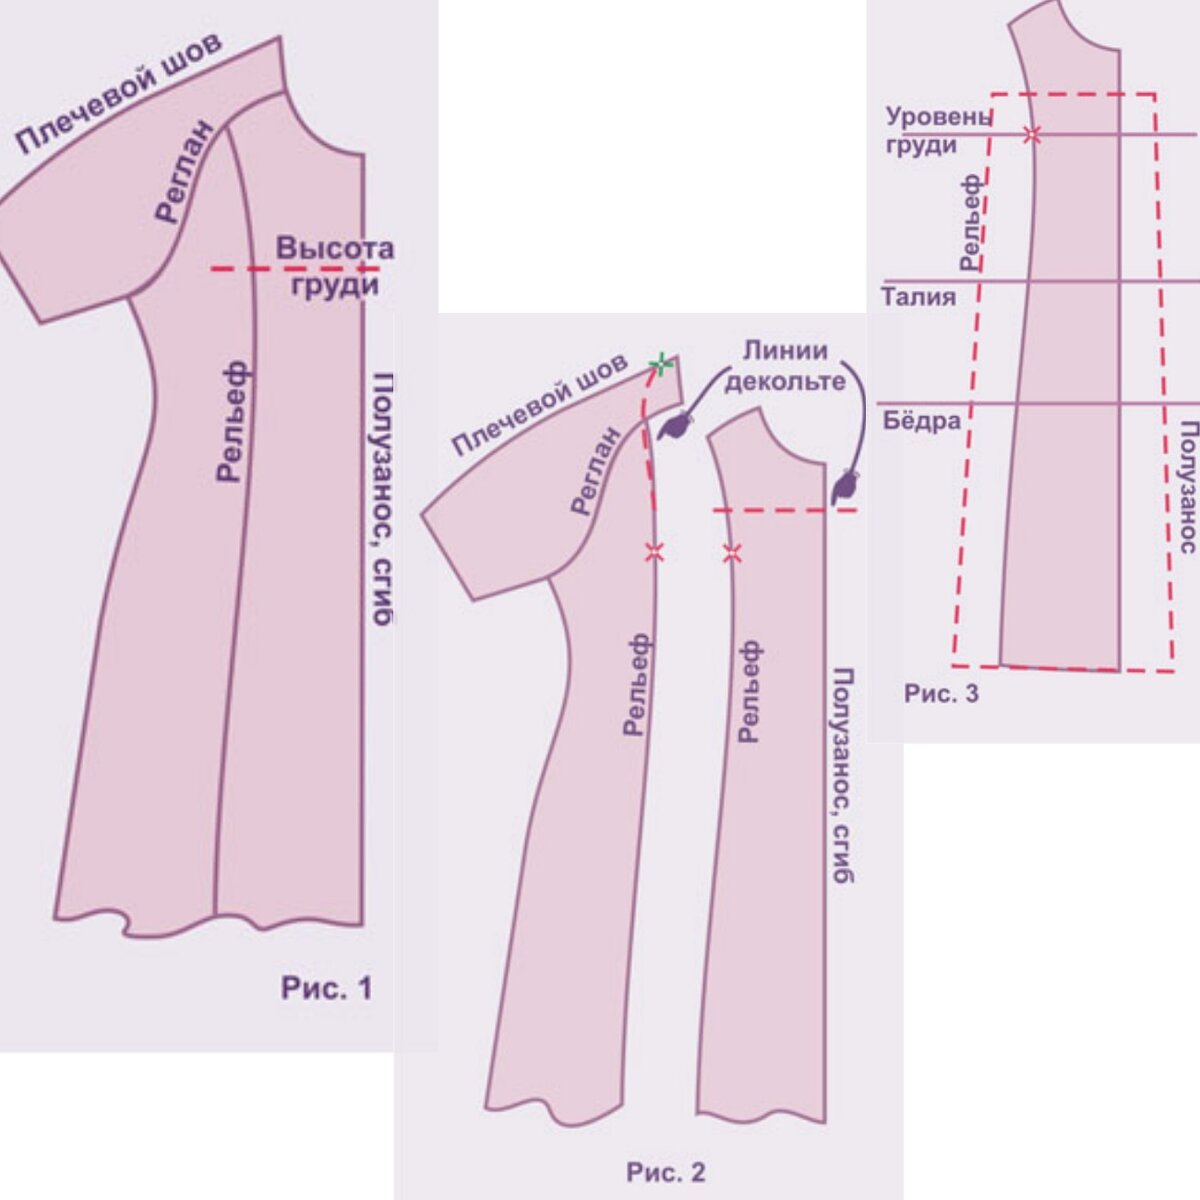 Как перешить платье и поменять его фасон и размер | Ателье MASTERSKAYA